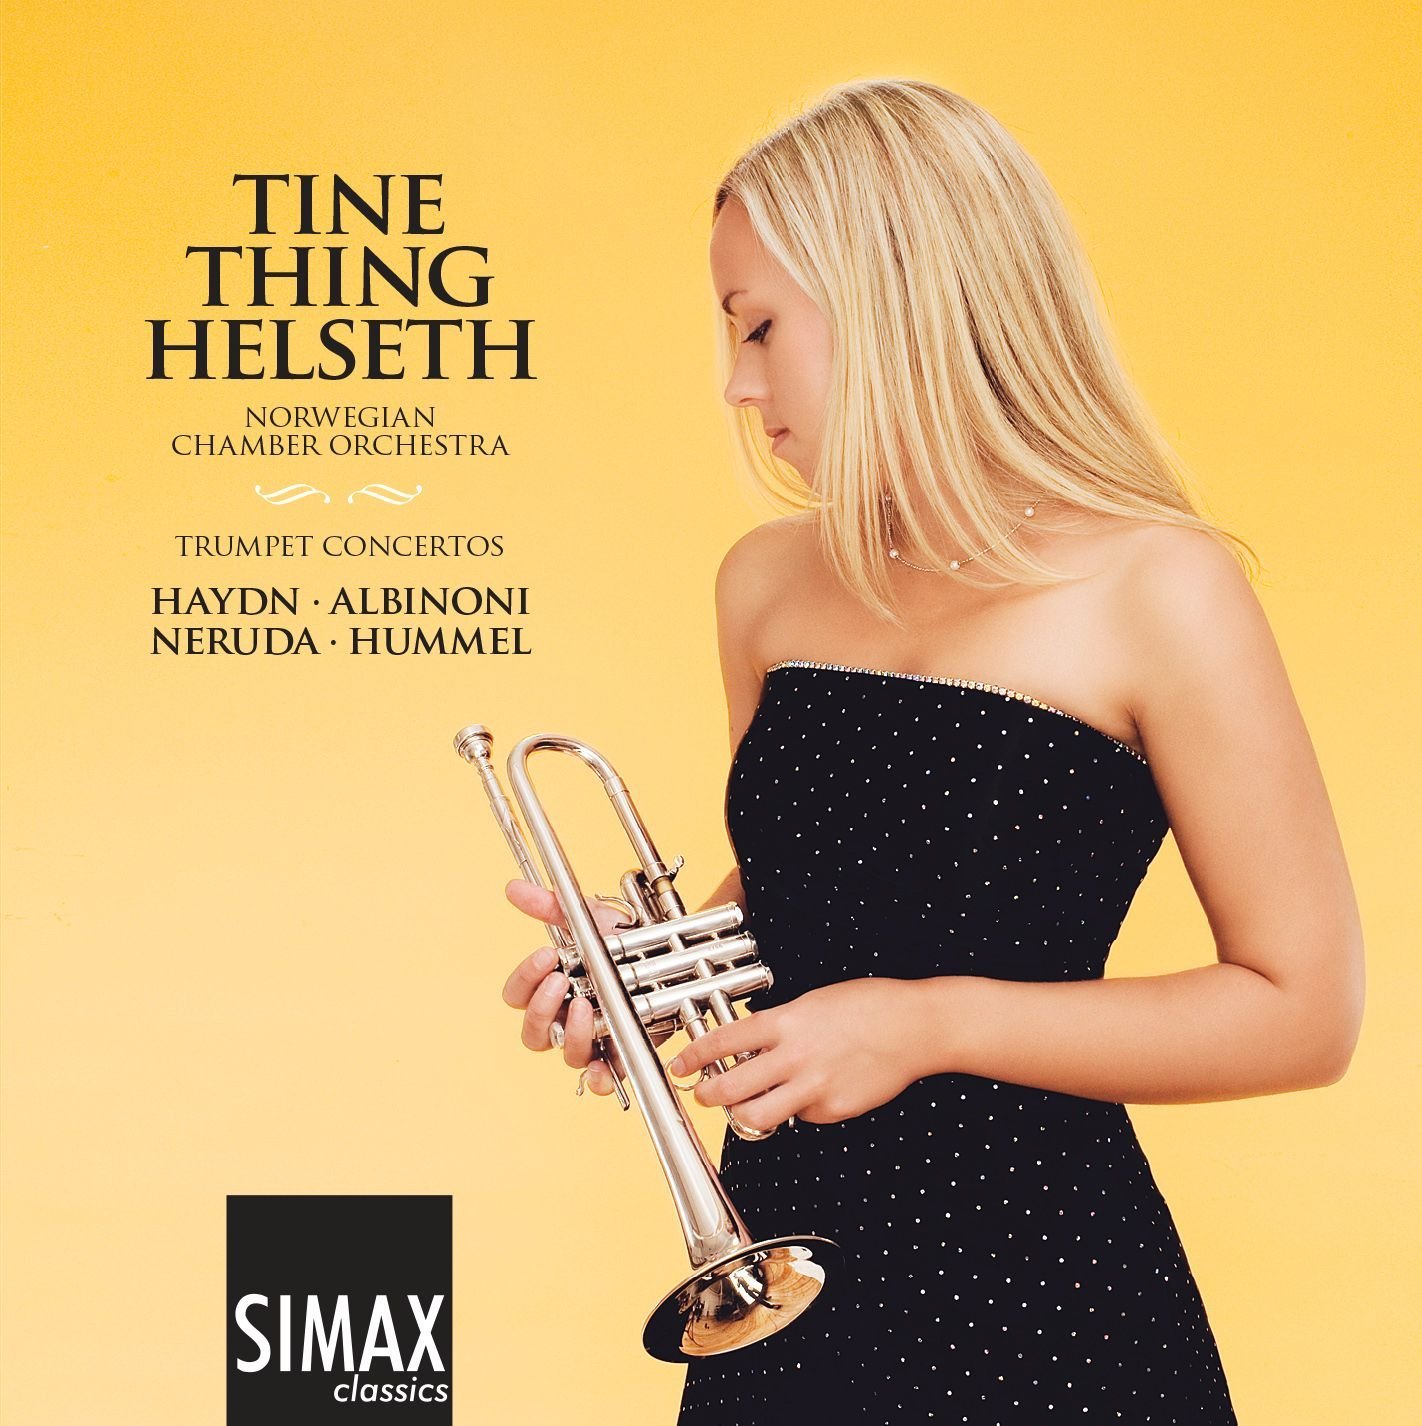 Audio Cd Tine Thing Helseth: Trumpet Concertos - Haydn, Albinoni, Hummel, Neruda NUOVO SIGILLATO, EDIZIONE DEL 03/03/2008 SUBITO DISPONIBILE